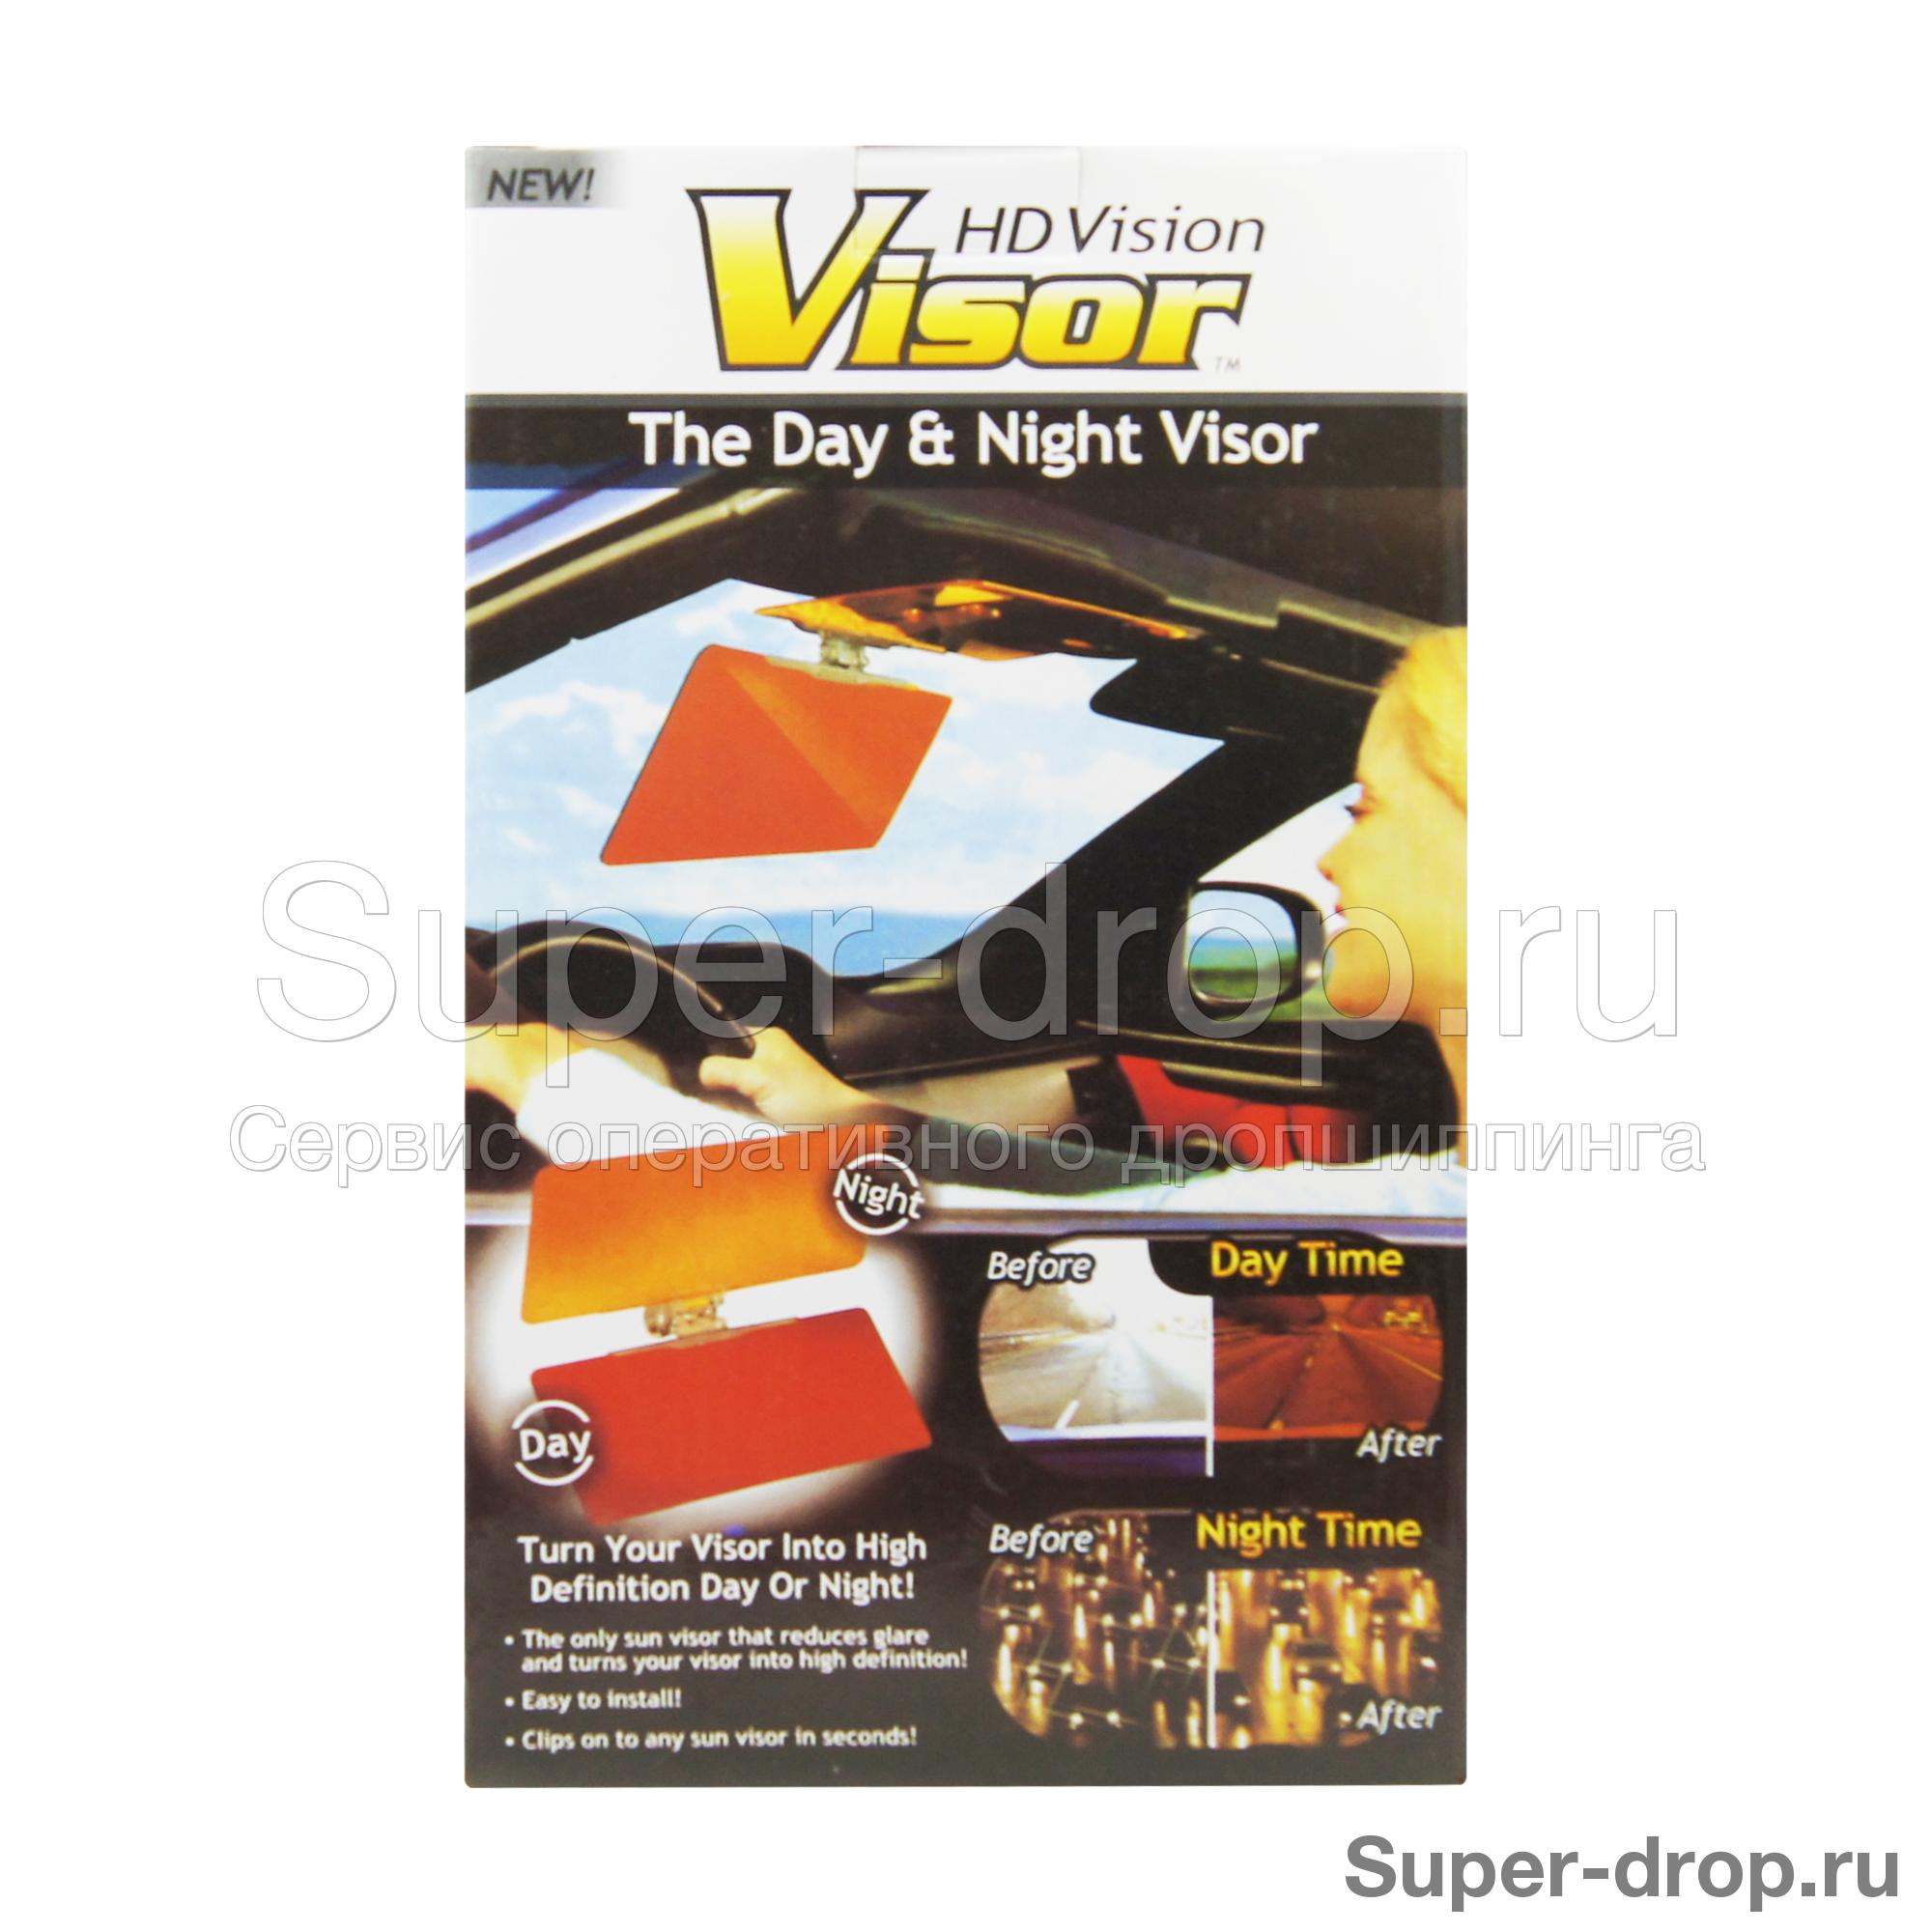 Солнцезащитный козырек для авто Visor Vision 